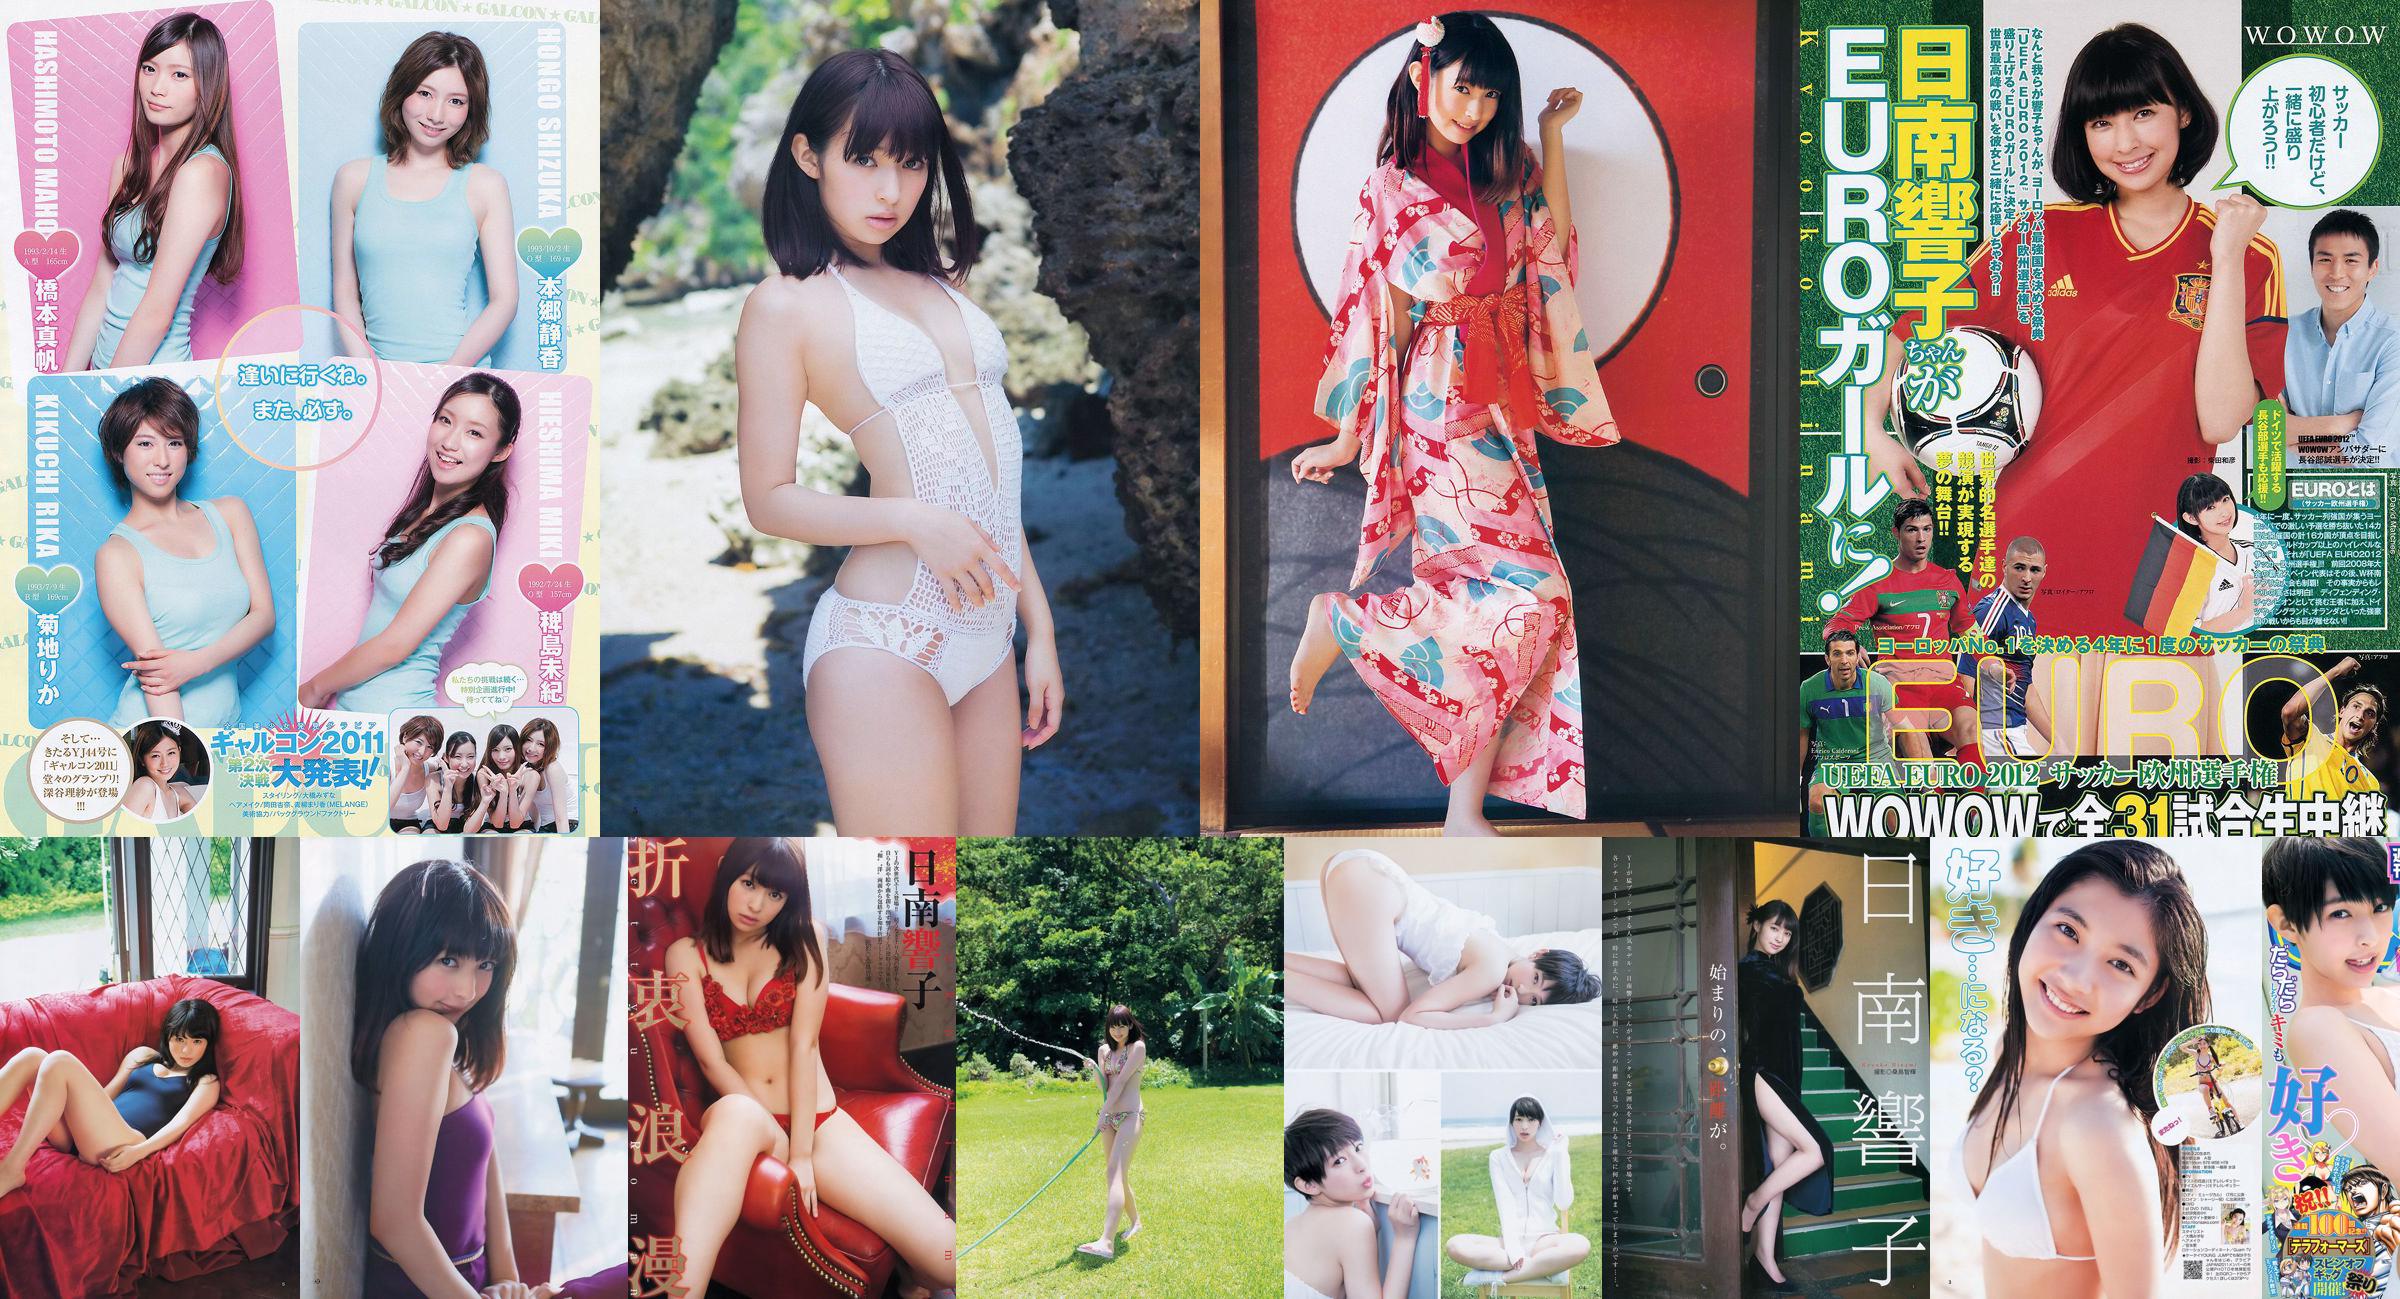 Nichinan Kyouko Nito Misaki [Wekelijkse Young Jump] 2012 nr 08 Photo Magazine No.f004da Pagina 1